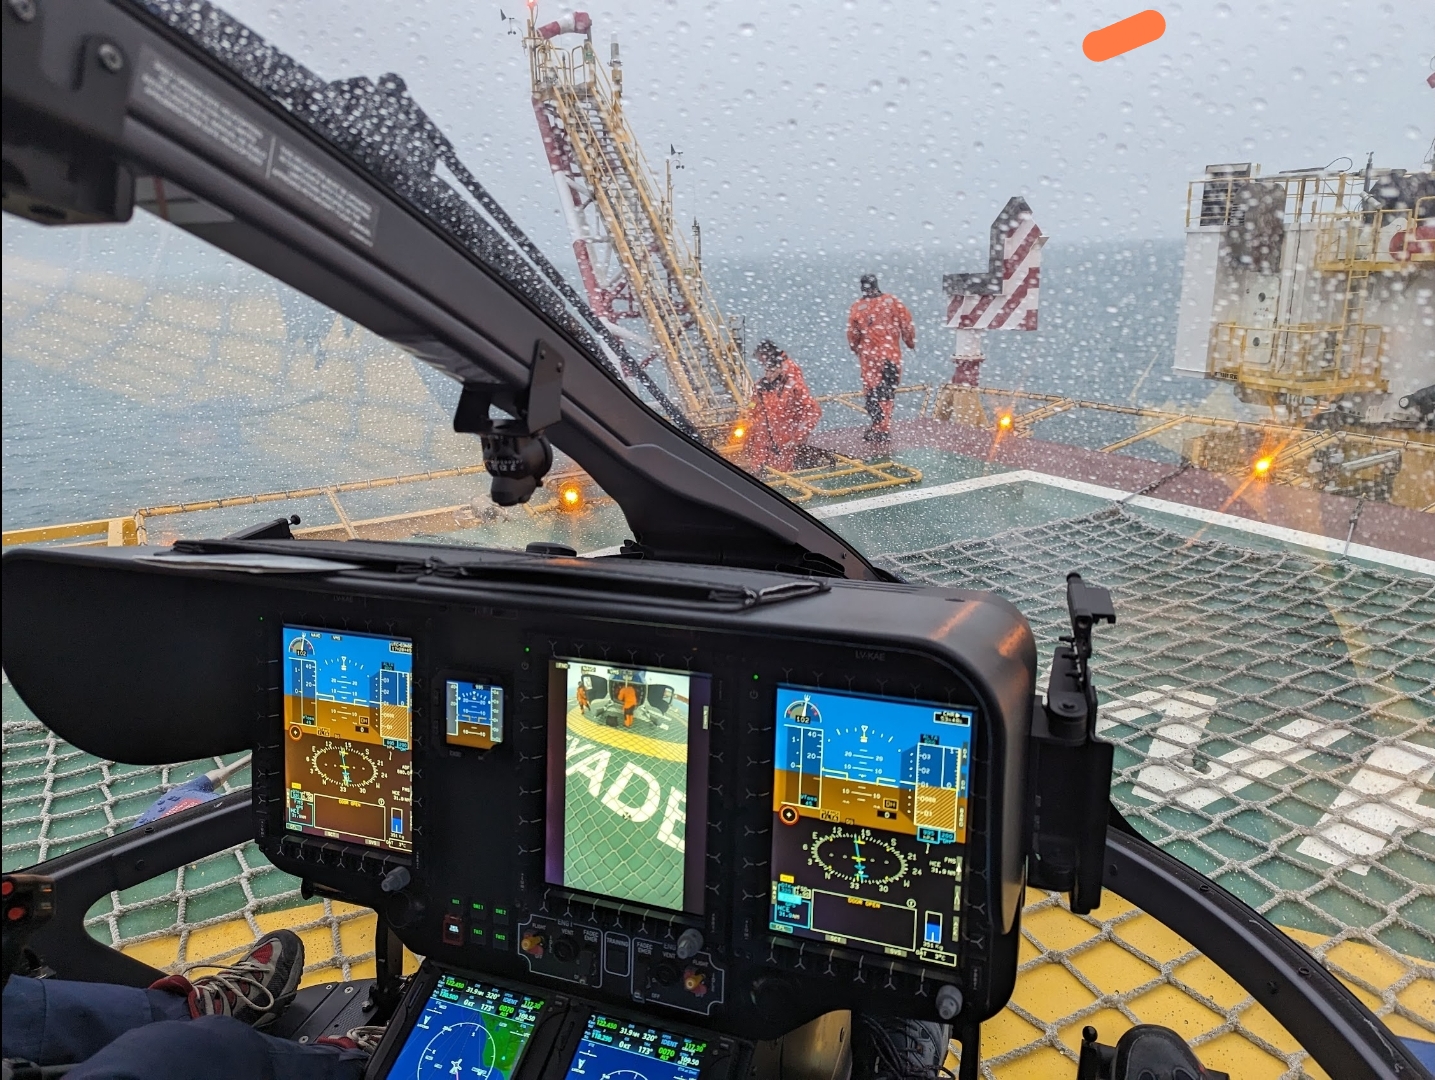 Operación de Helicópteros Marinos en la Base de Río Cullen, Tierra del Fuego – Aproximación a plataforma offshore (Federico Campbell)